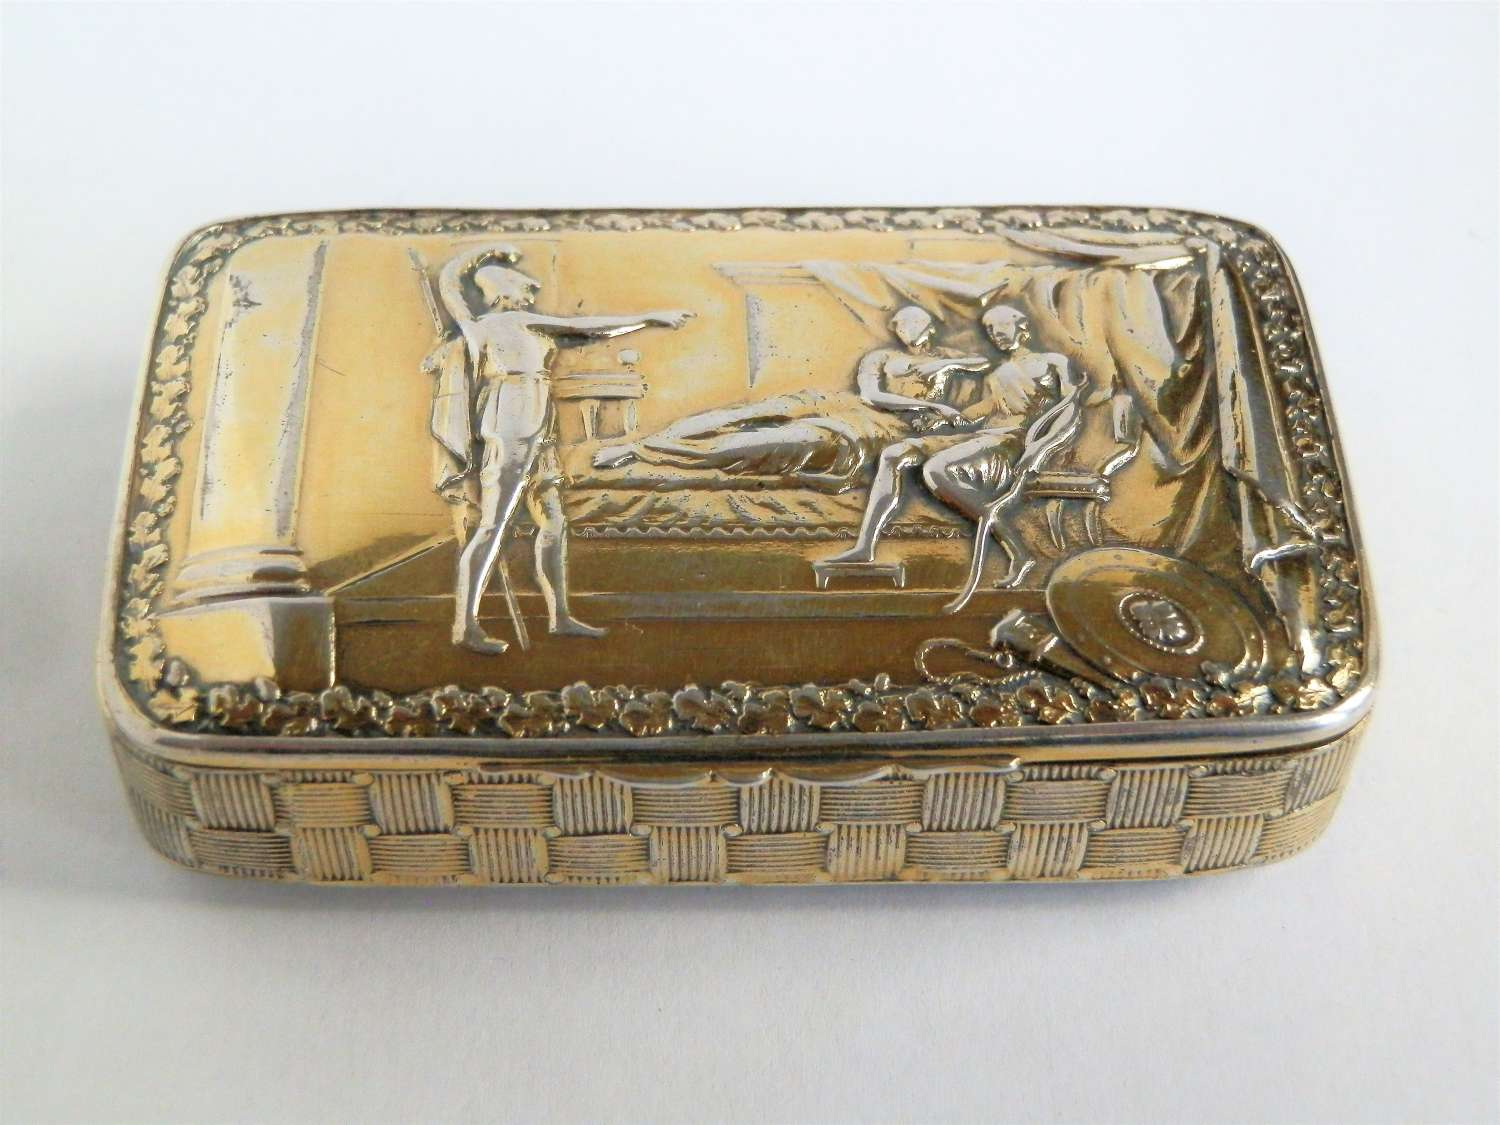 A rare George III silver gilt snuff box, Joseph Wilmore 1814